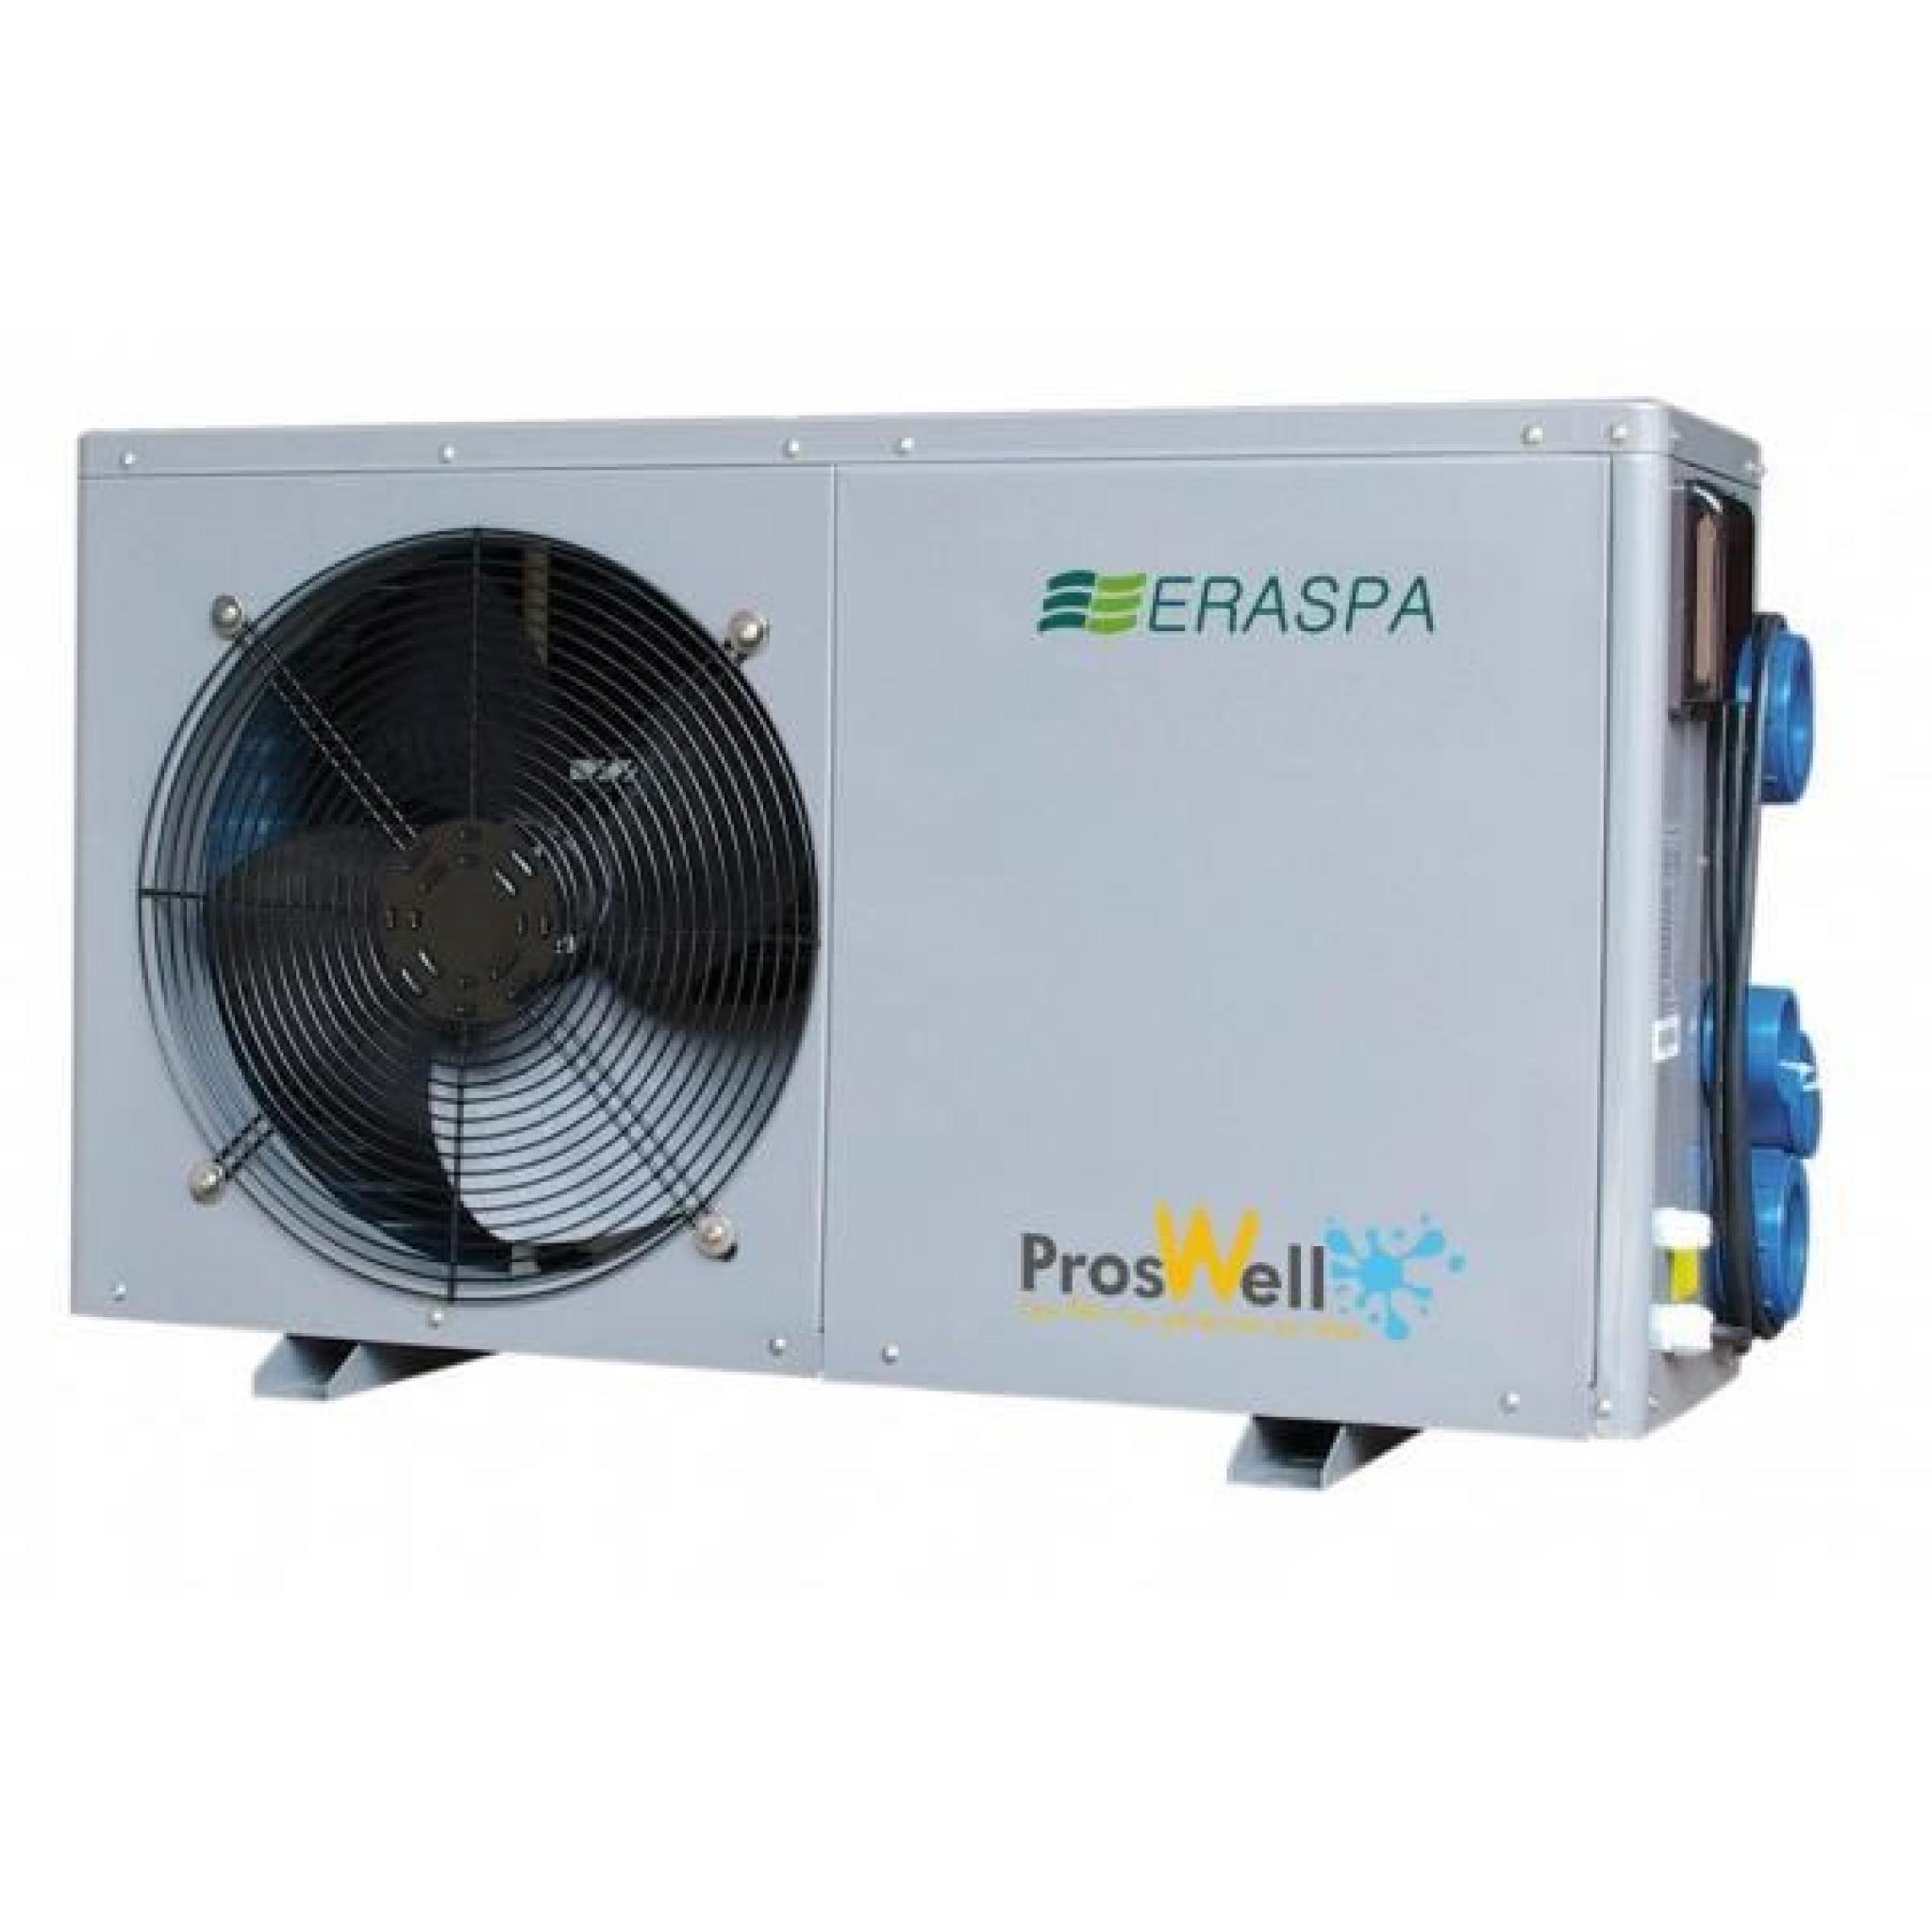 Pompe à chaleur Proswell Eraspa - 8,50 kW de 40 à 60 m3